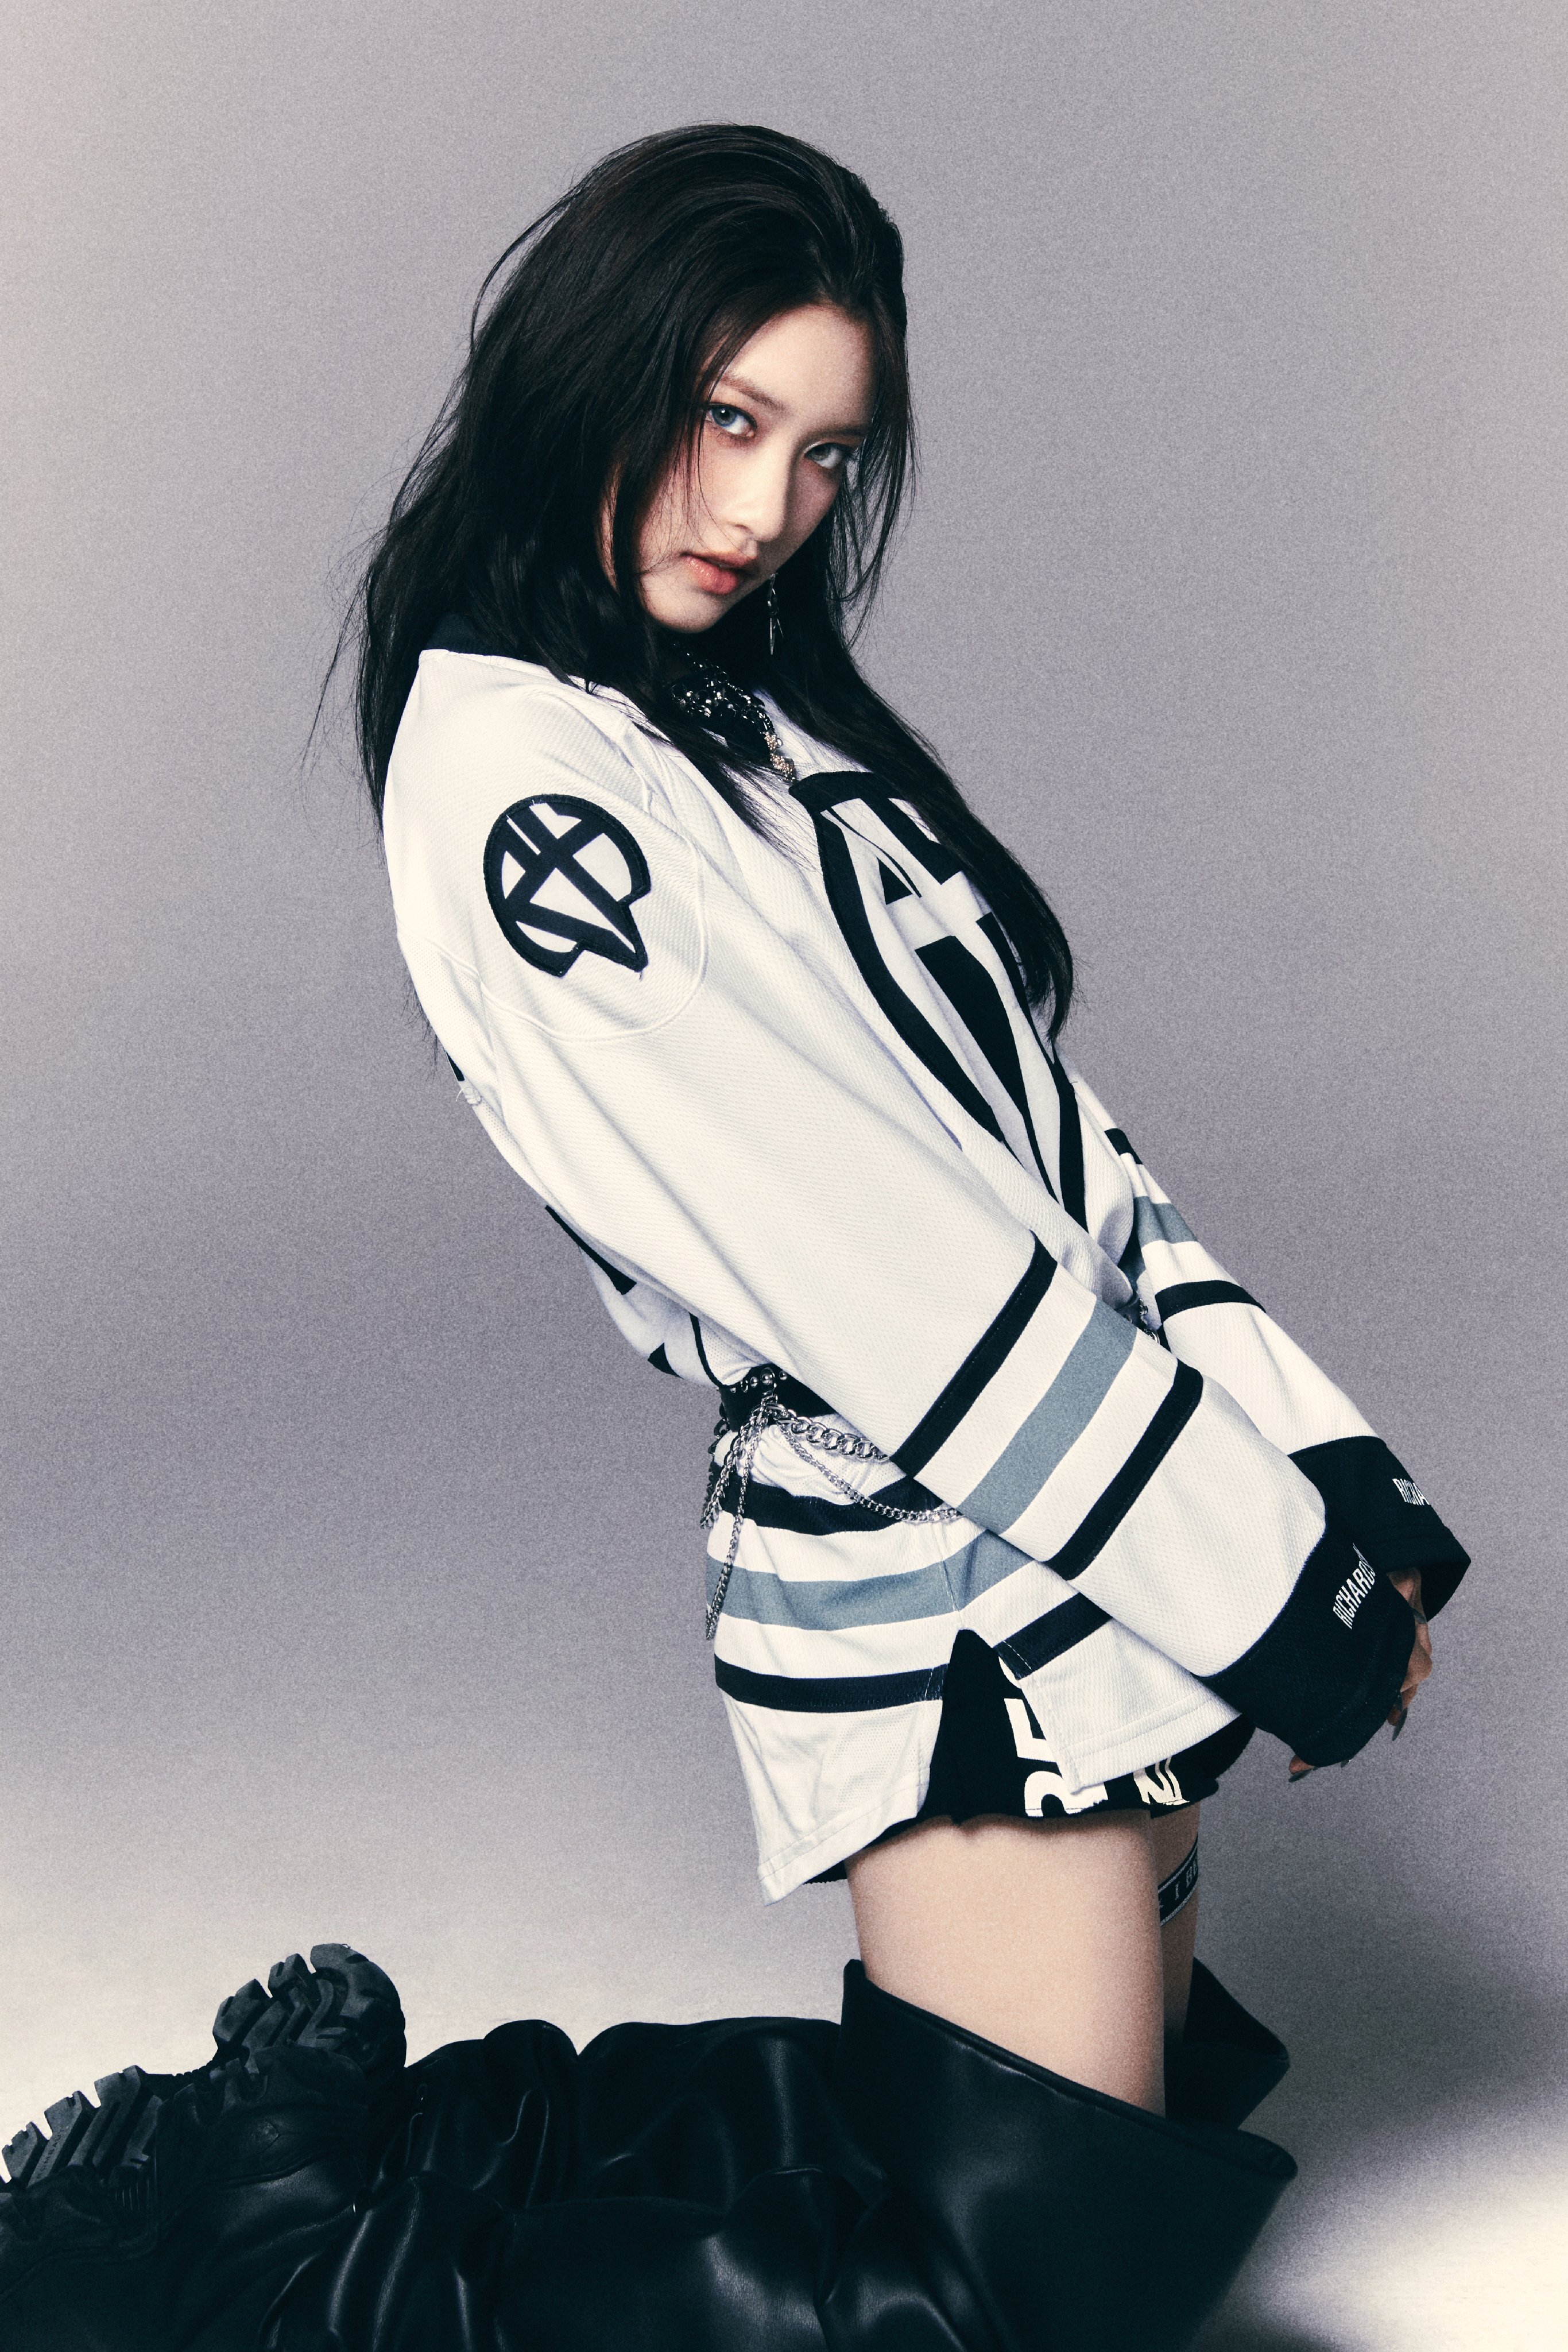 IVE dévoile des photos teasers pour son comeback avec « Baddie » – K-GEN